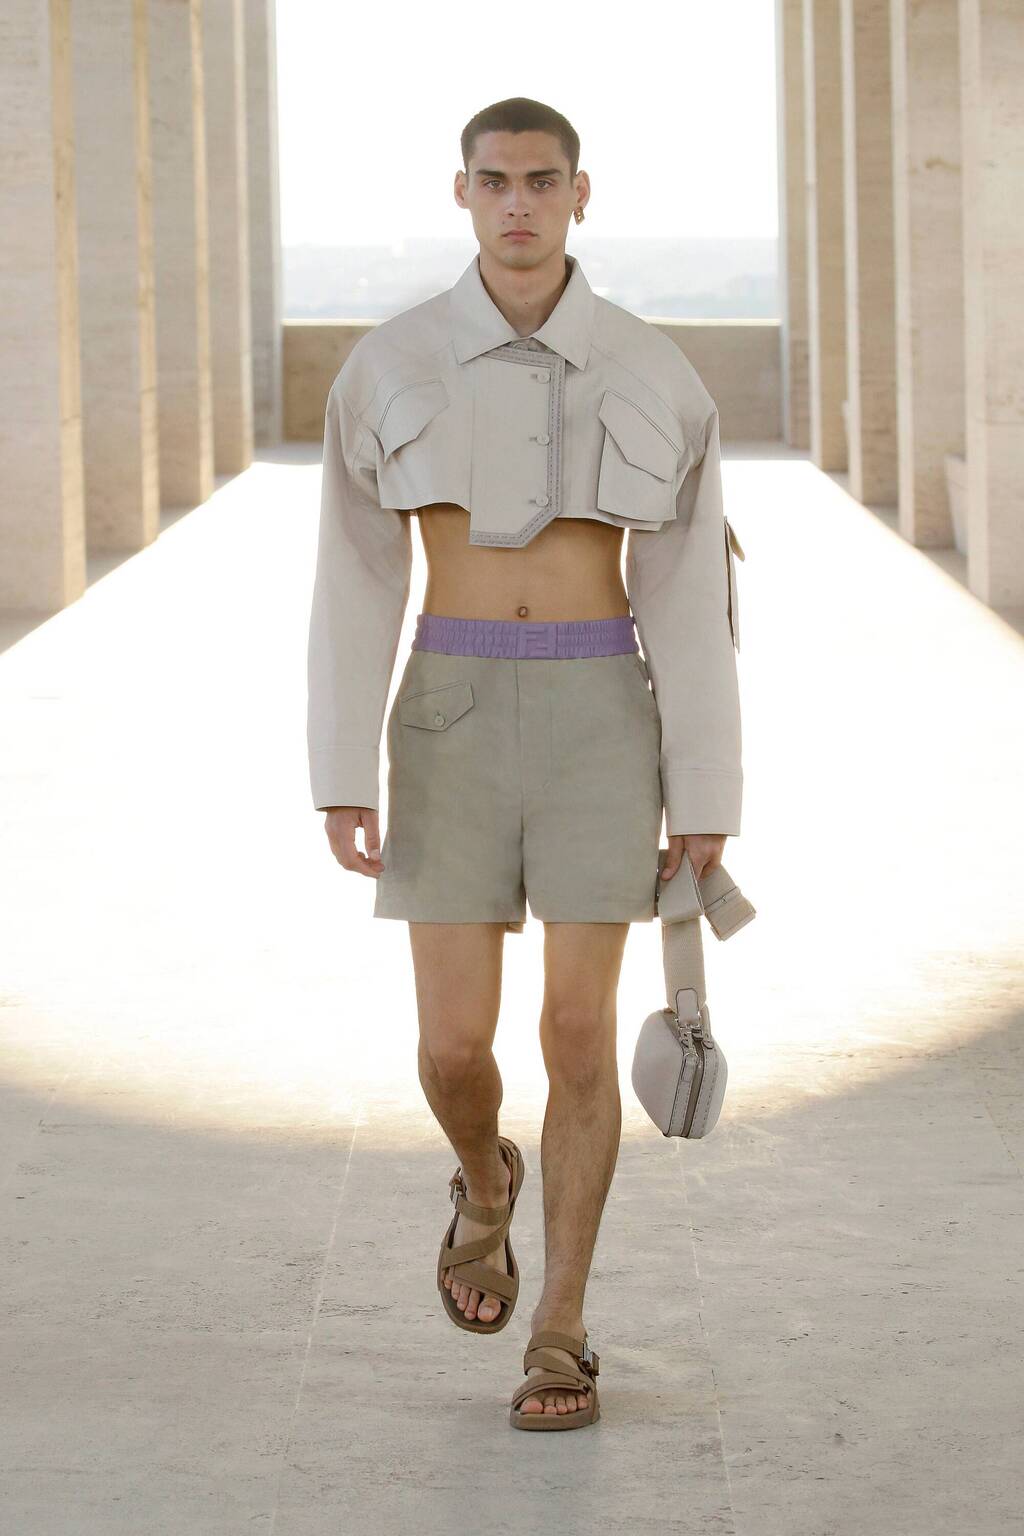 חולצות בטן בתצוגה של פנדי בשבוע האופנה לגברים במילאנו